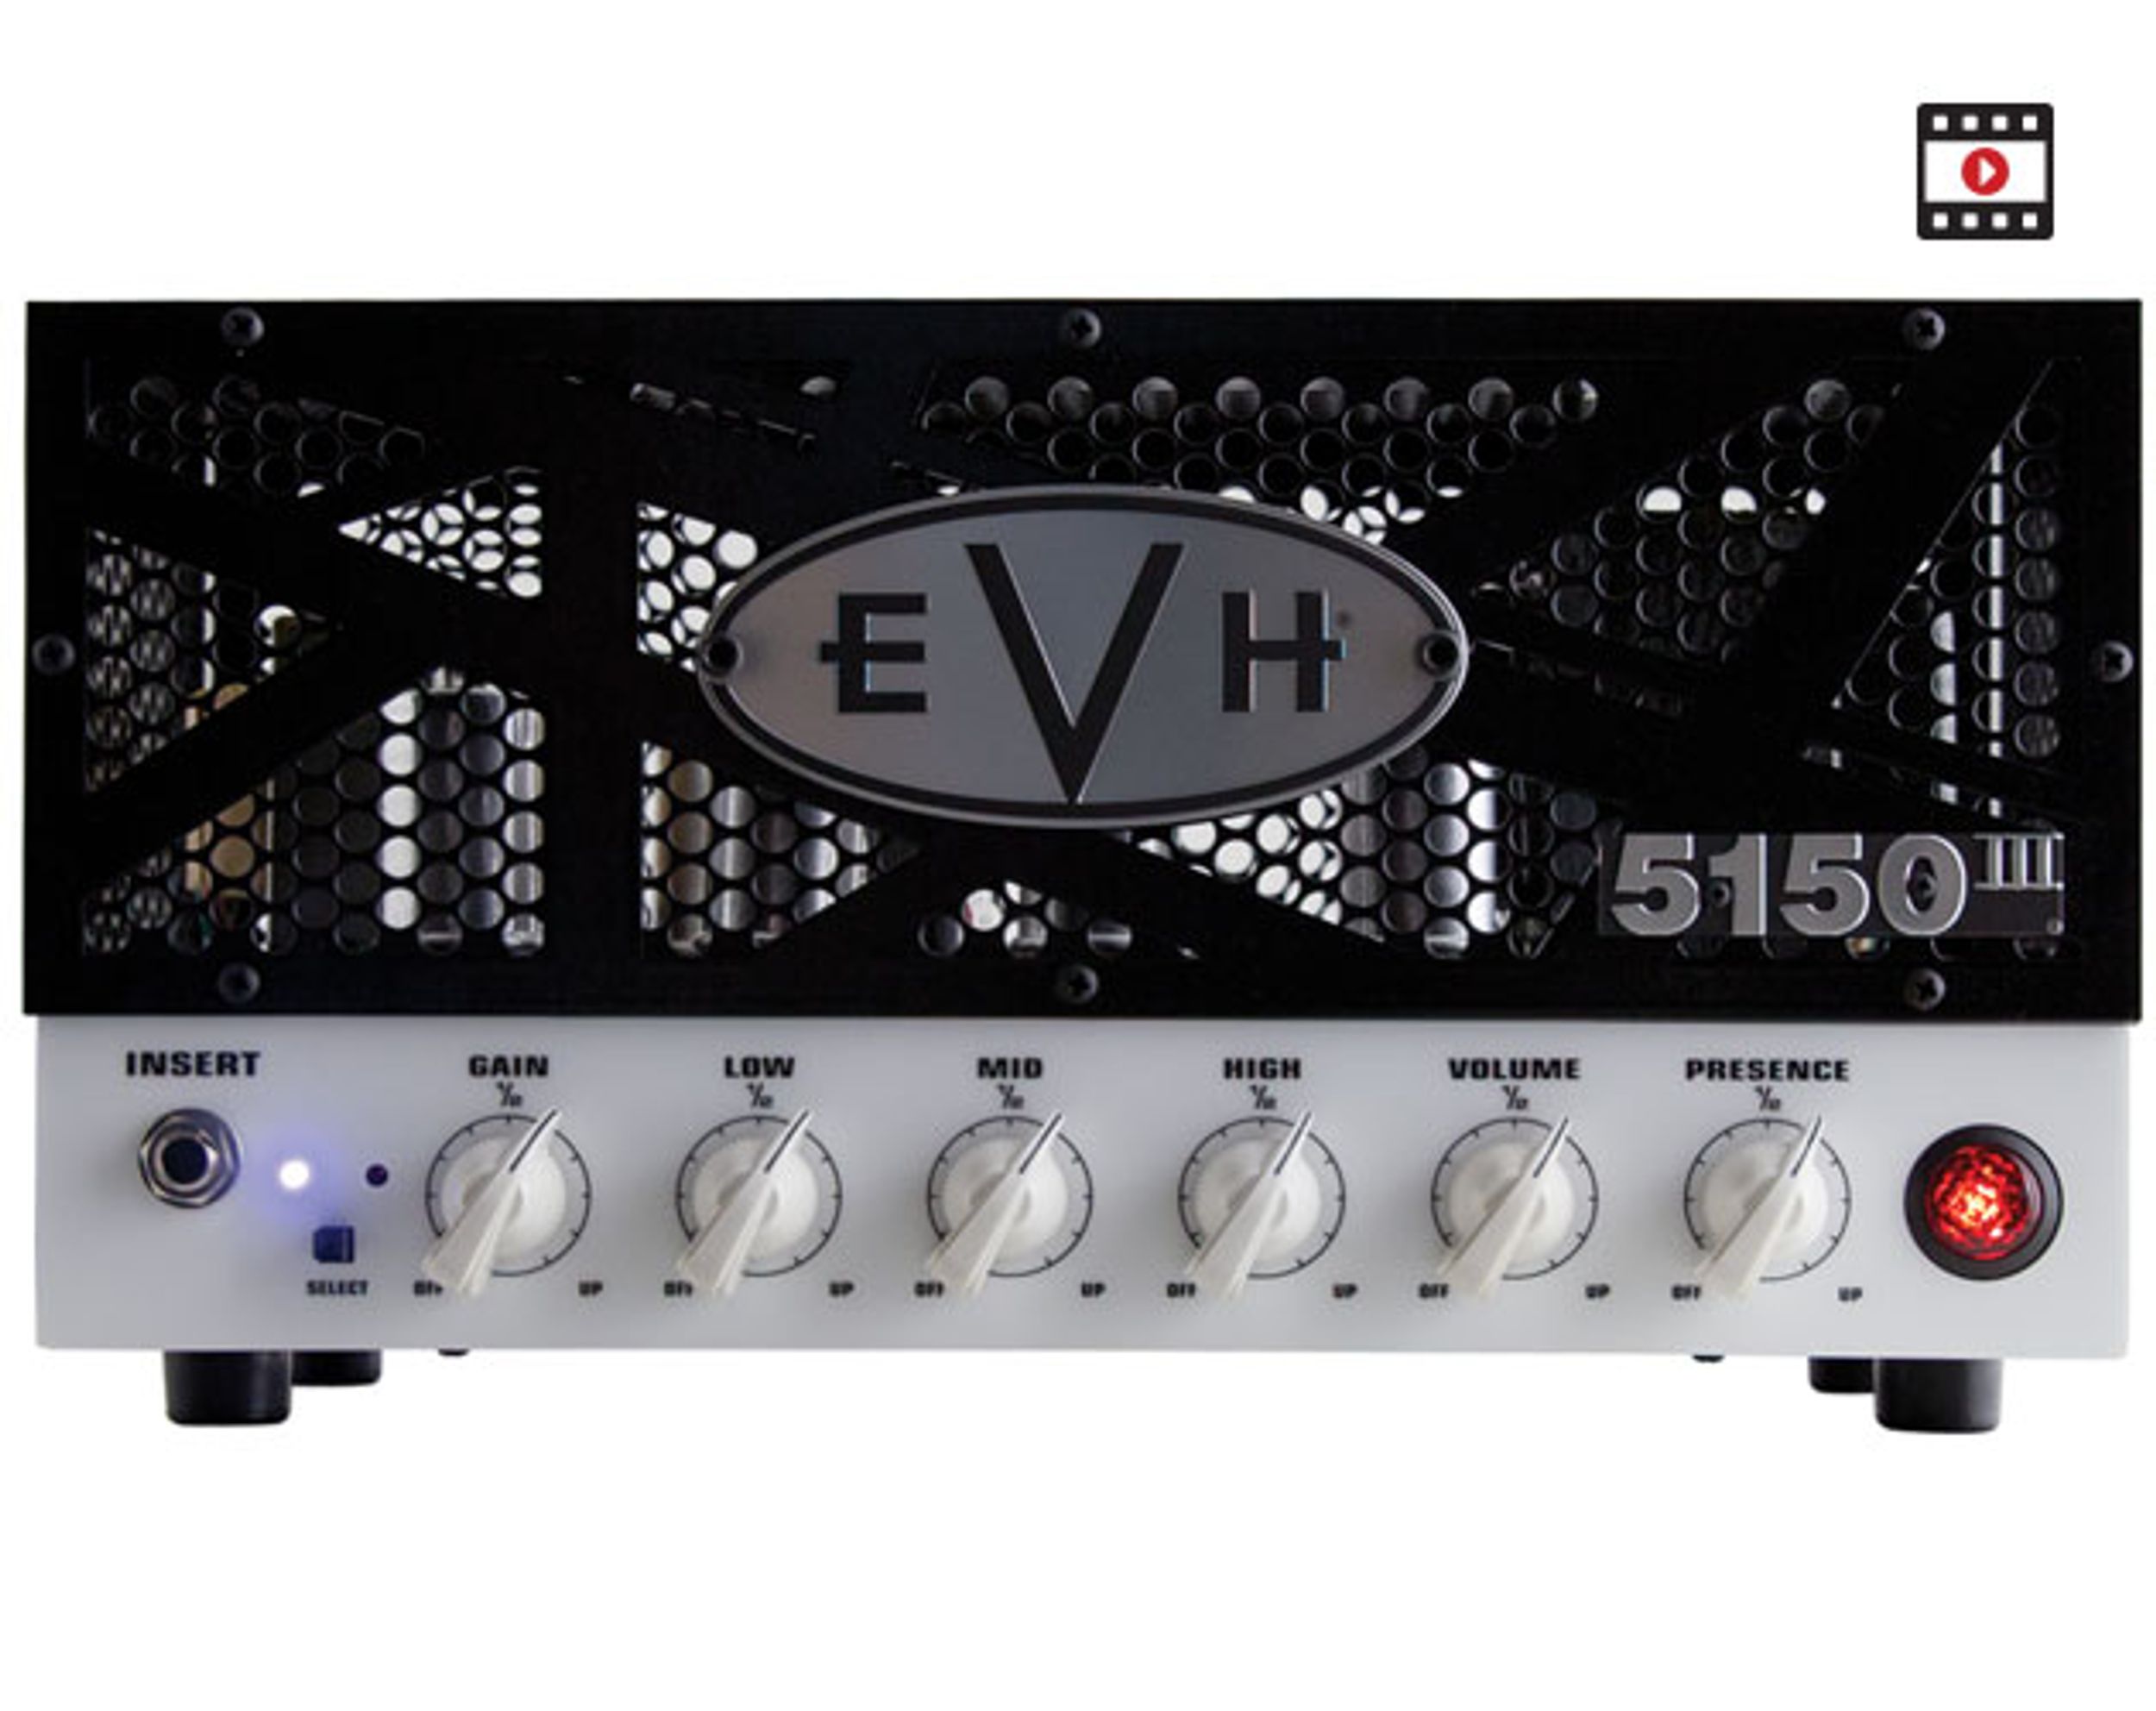 EVH 5150 III LBX Review